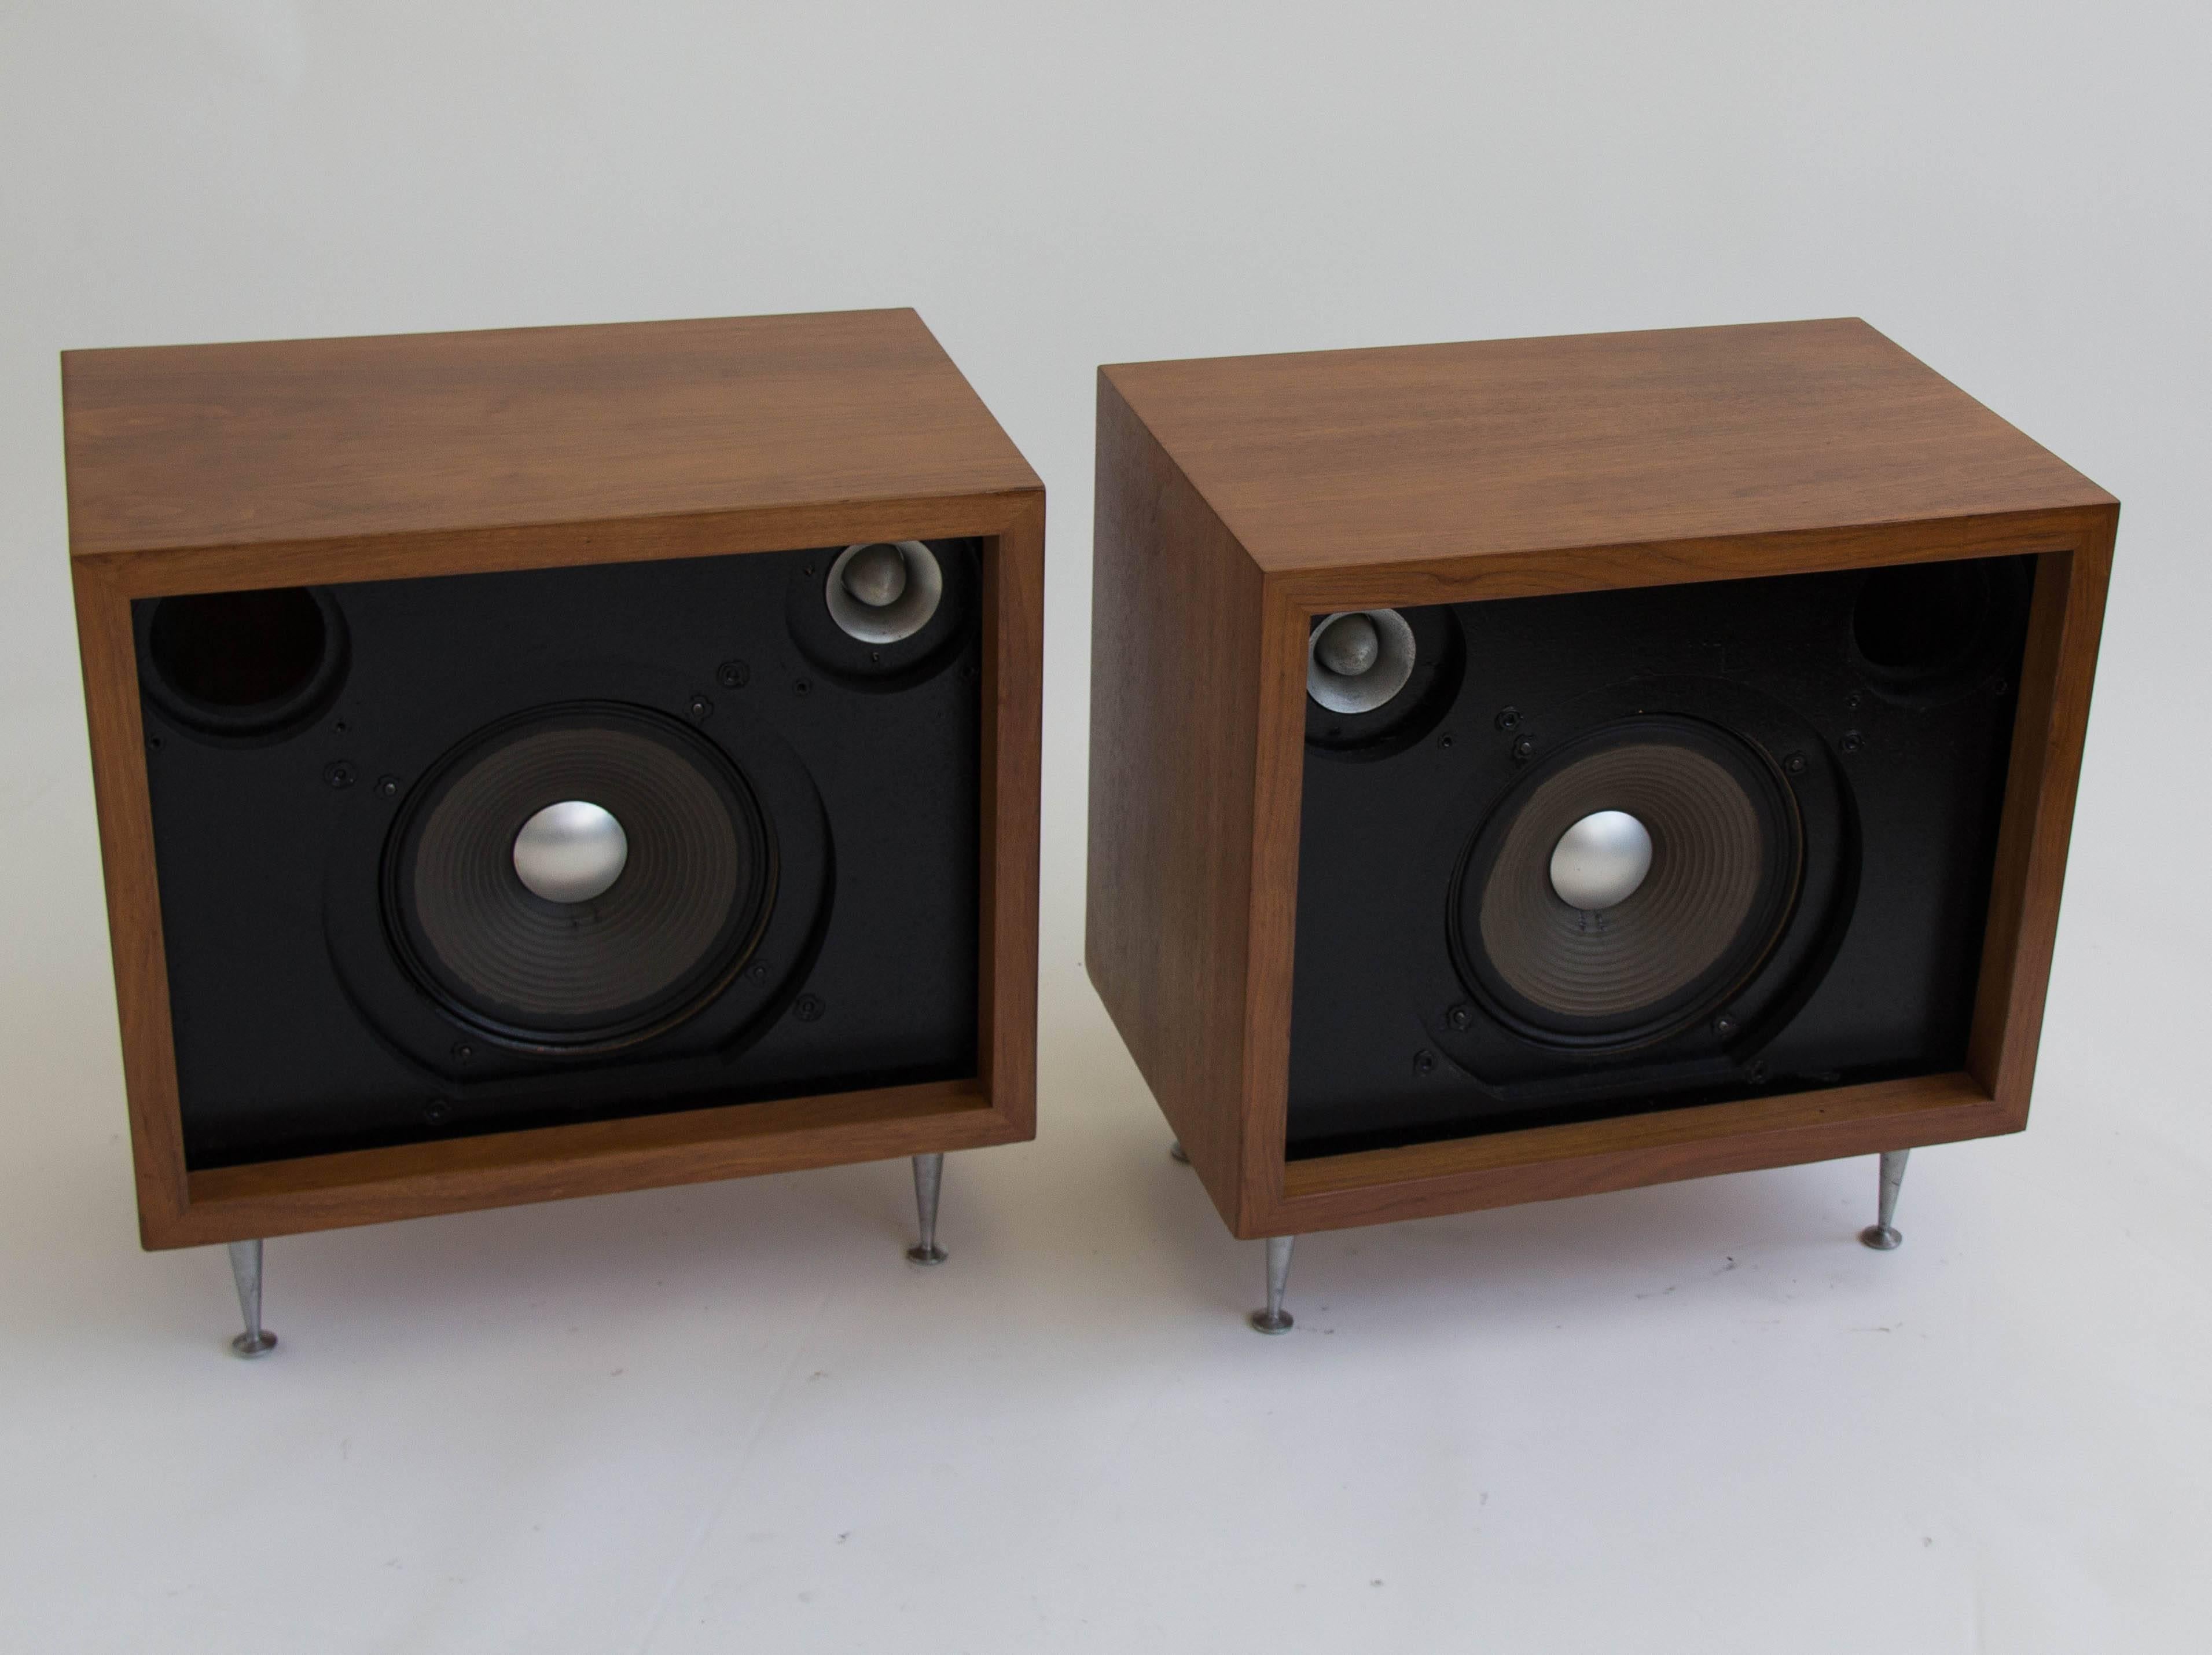 American Pair of Walnut JBL Baron C38 Speakers Designed by Alvin Lustig